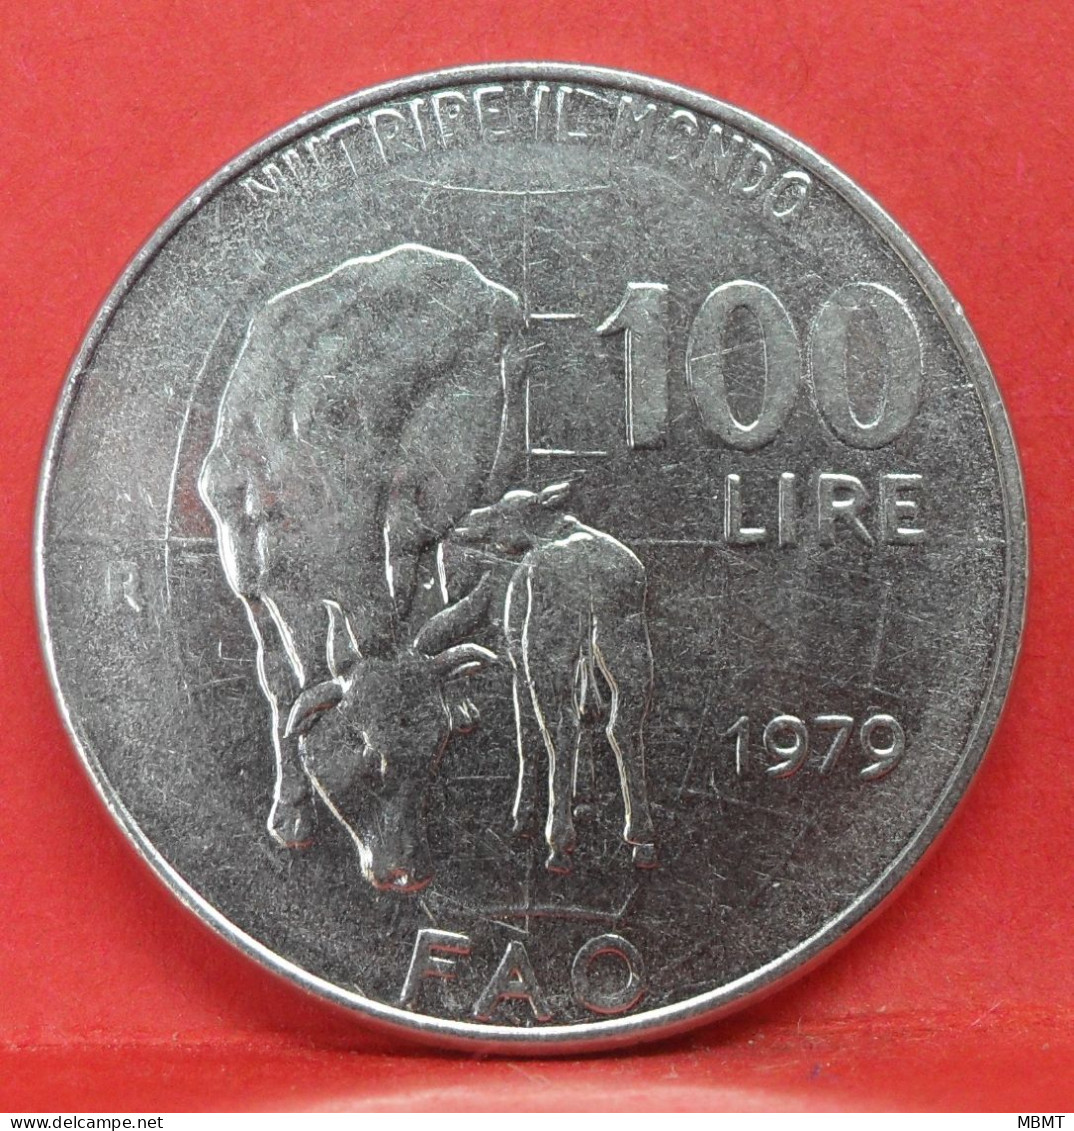 100 Lire 1979 - TTB - Pièce De Monnaie Italie - Article N°3560 - Commémoratives